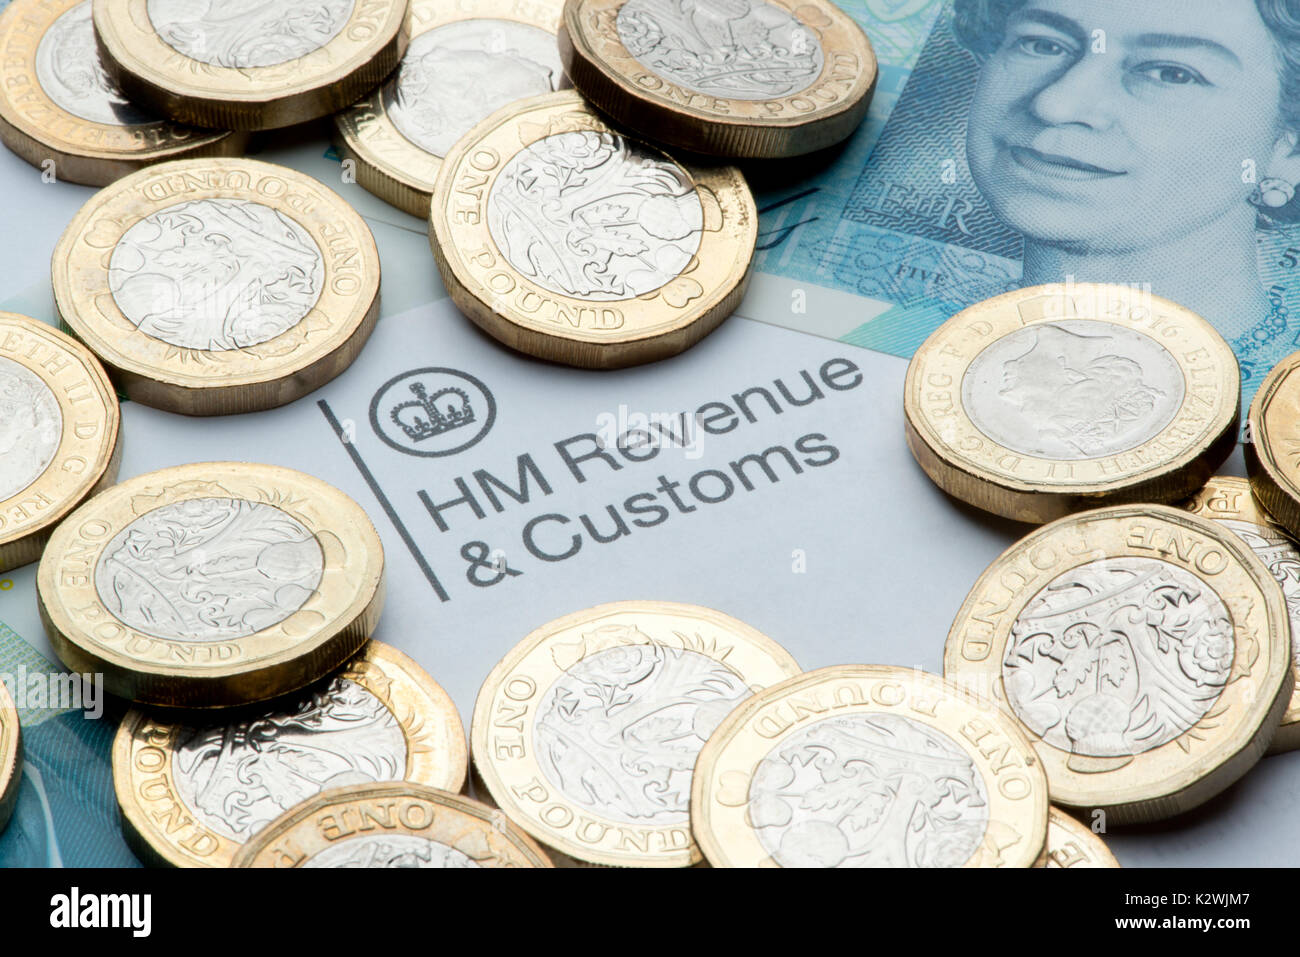 Un HM Ingresos & Customs membrete rodeado por nuevas monedas de 1€ y 5€ nota. Foto de stock